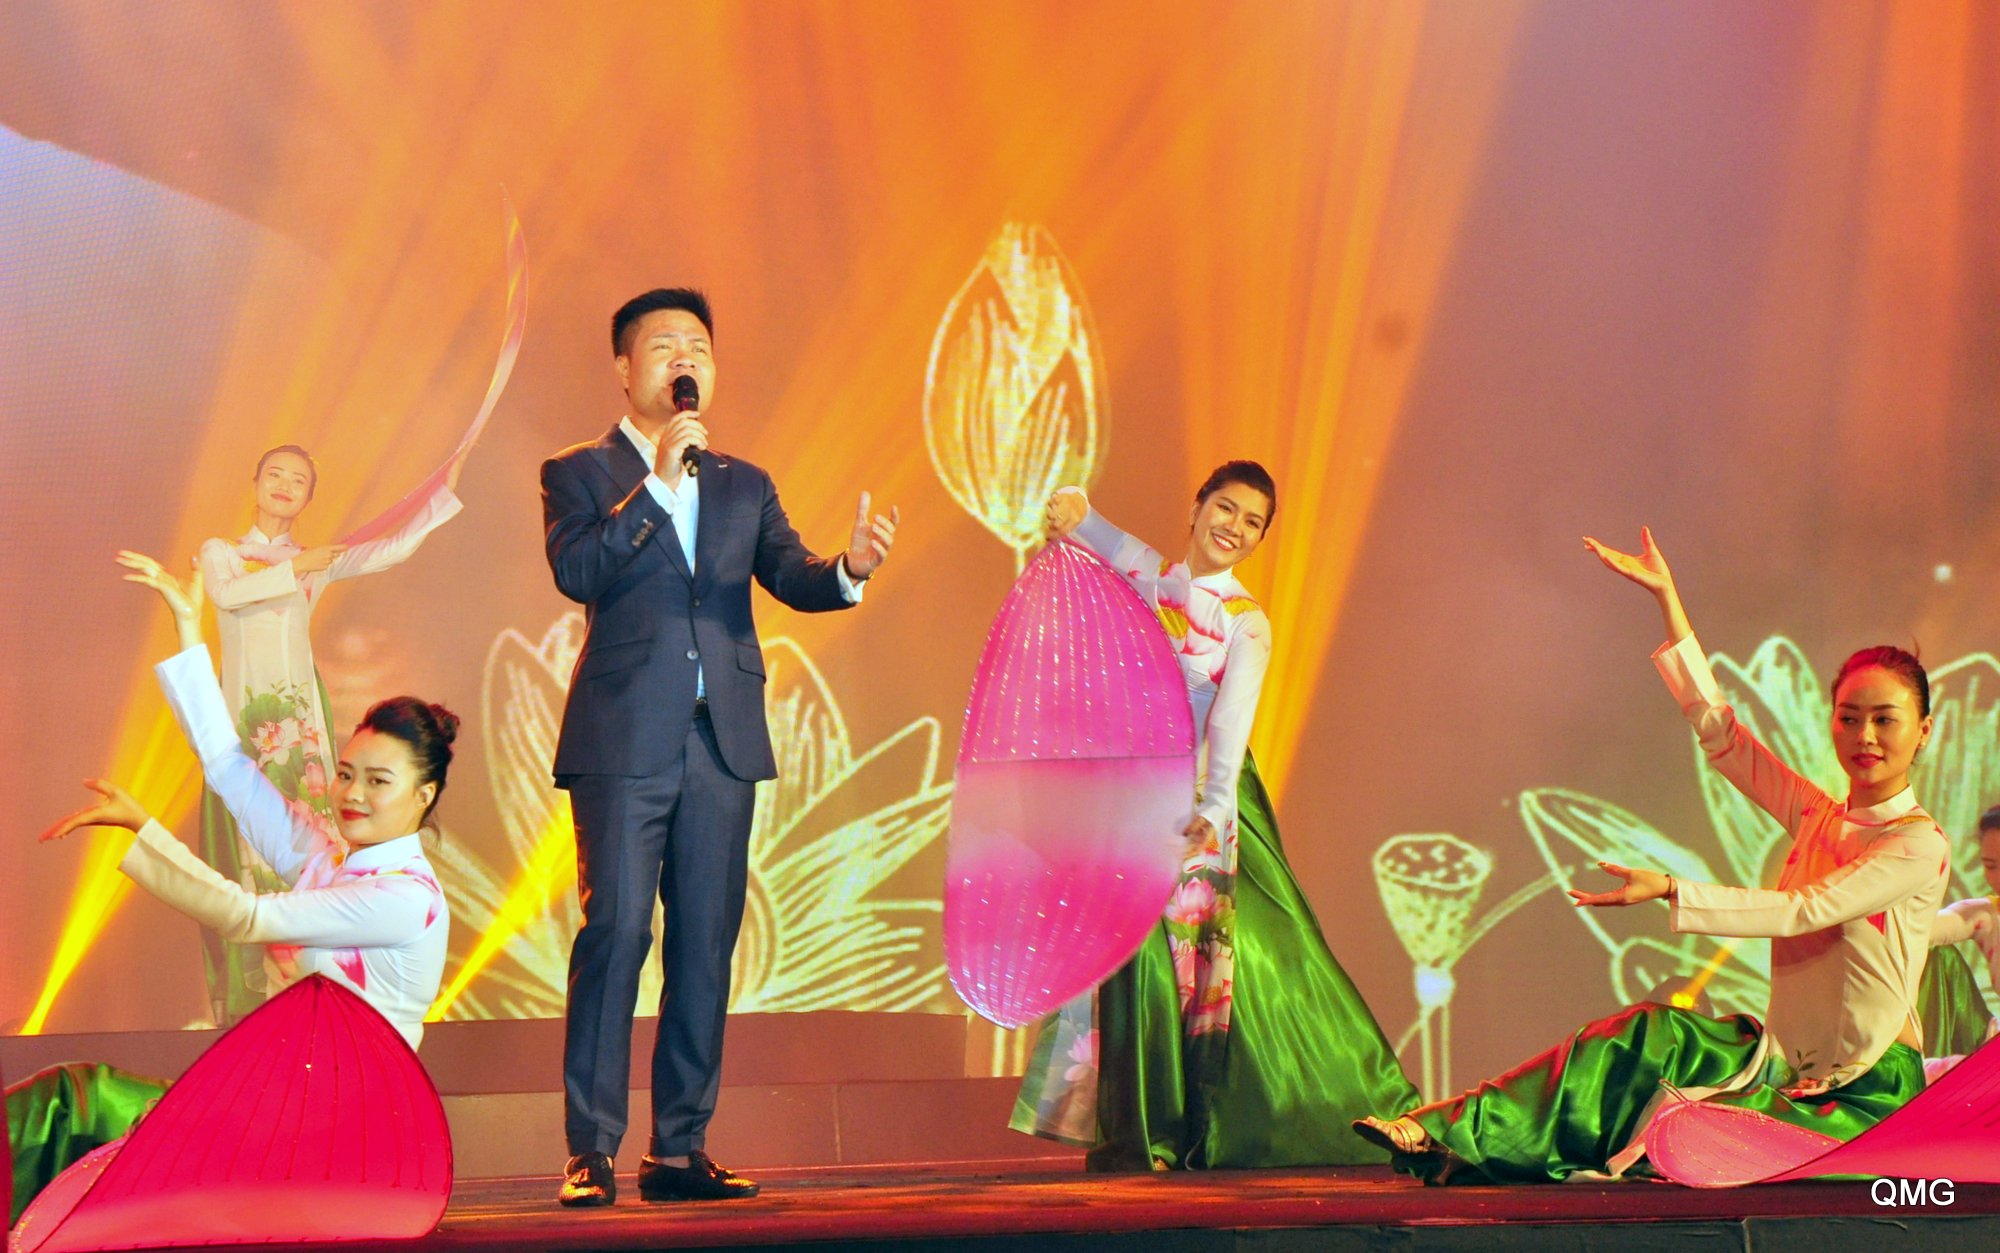 Ca sĩ Hoàng Tùng góp mặt trong chương trình nghệ thuật với ca khúc ca ngợi quê hương, đất nước và Chủ tịch Hồ Chí Minh.